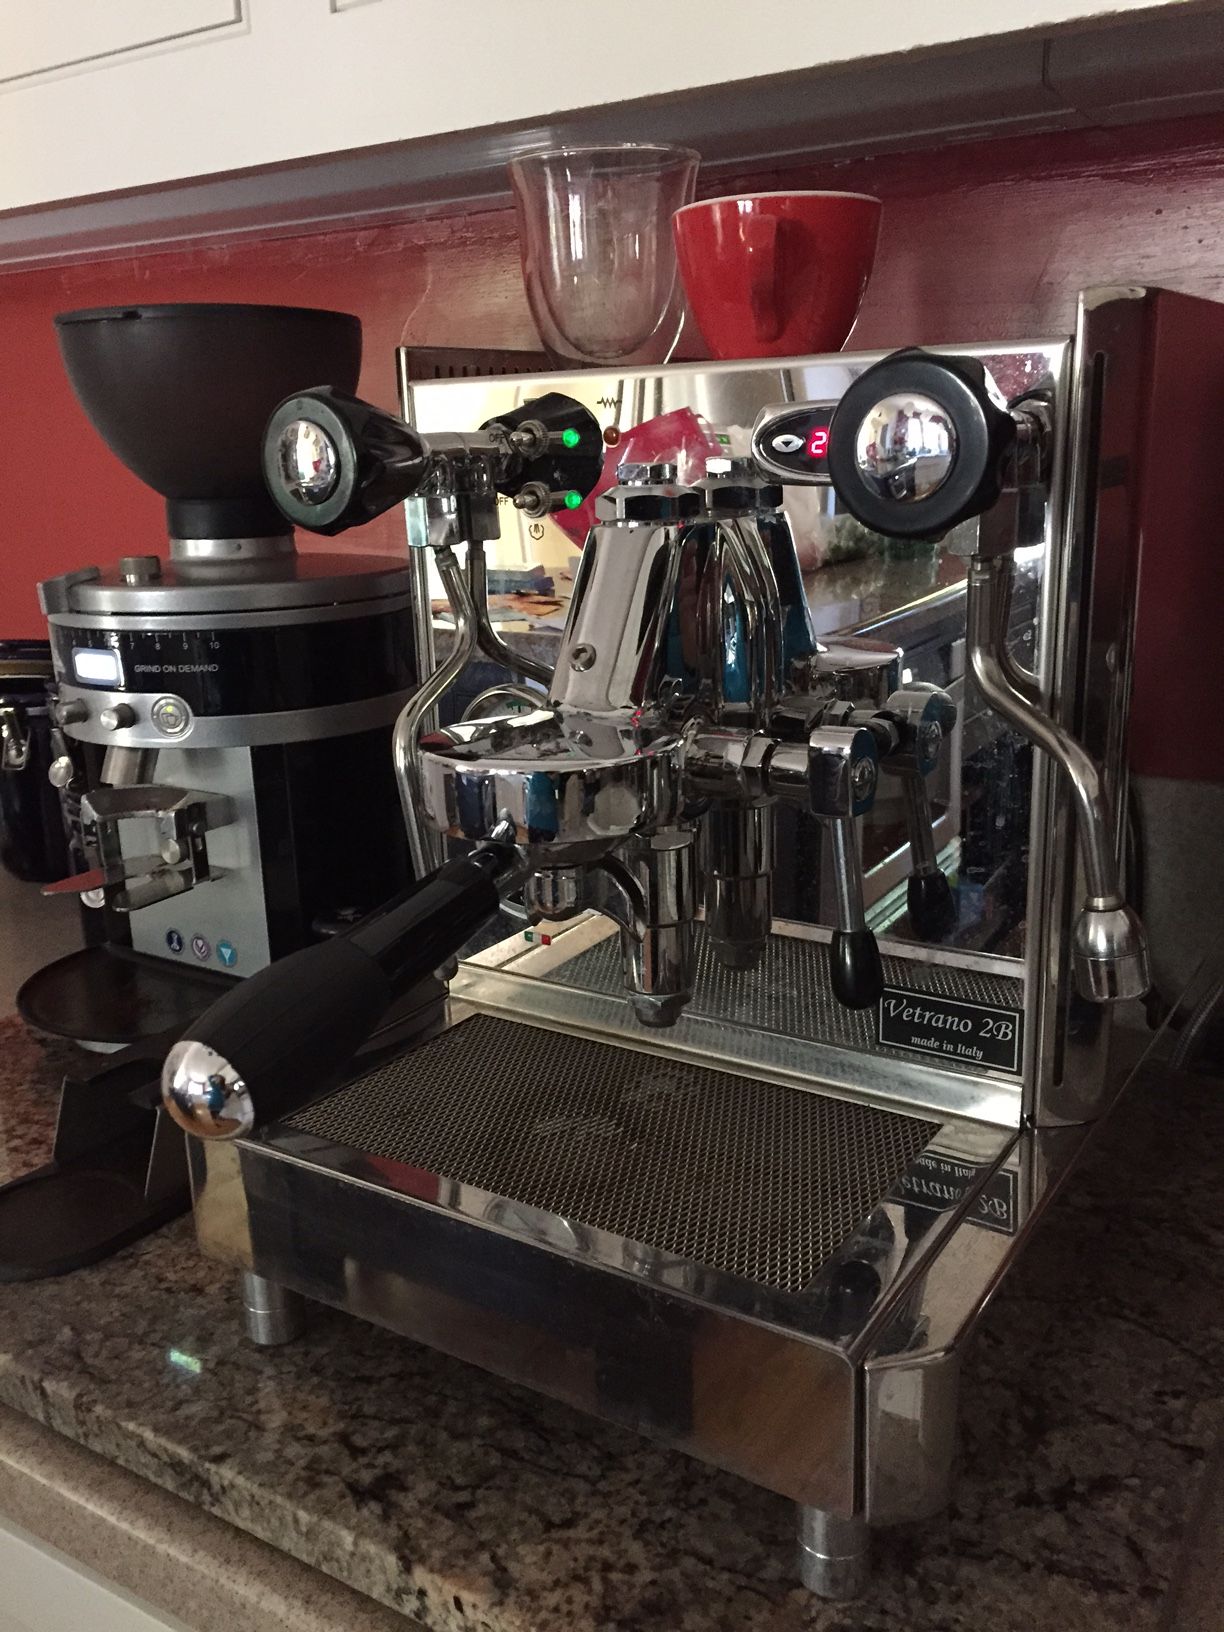 Home brewed espresso